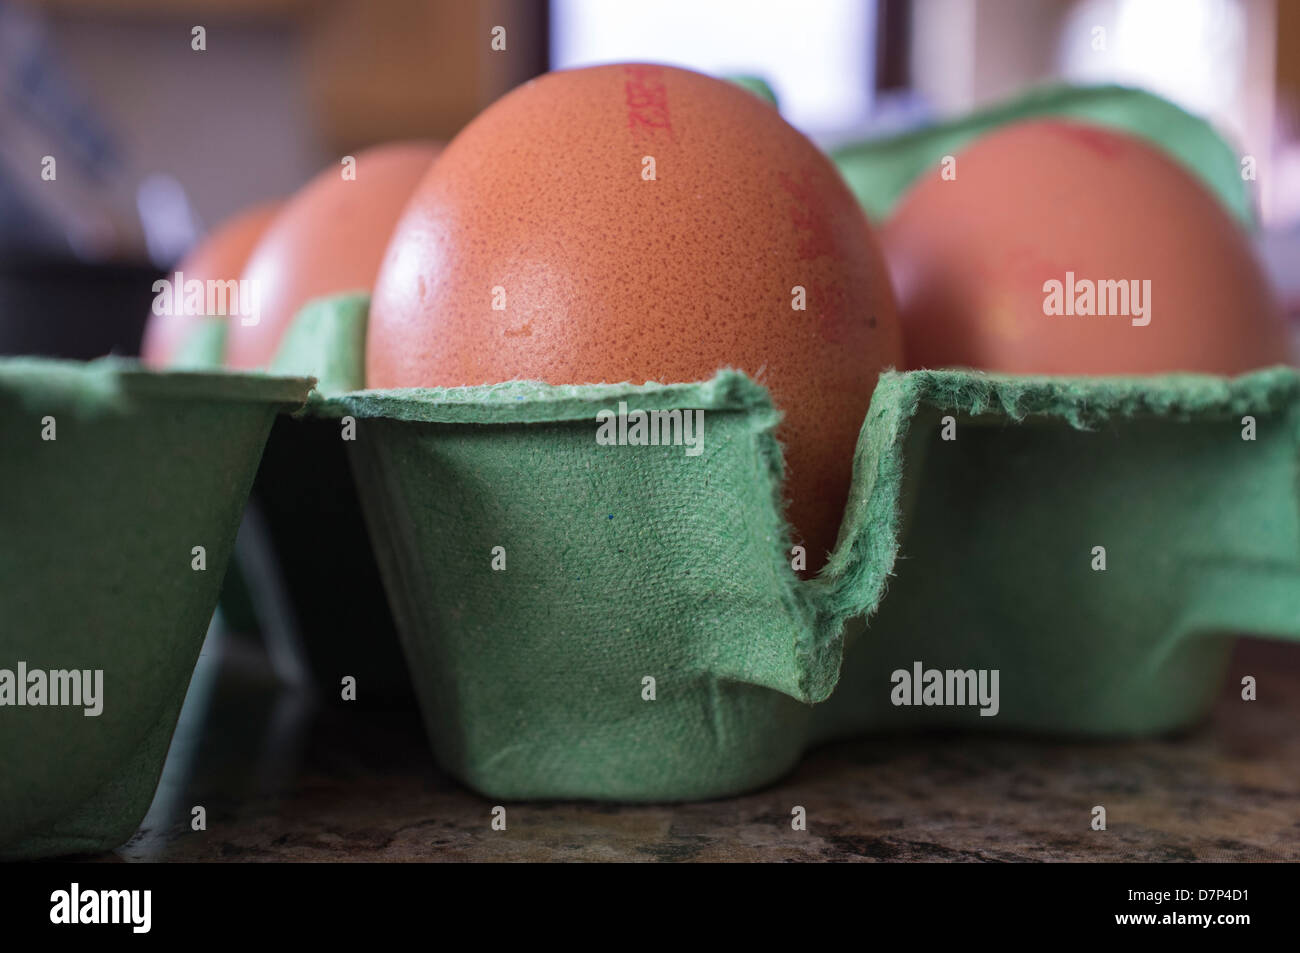 Eggs in open carton Stock Photo